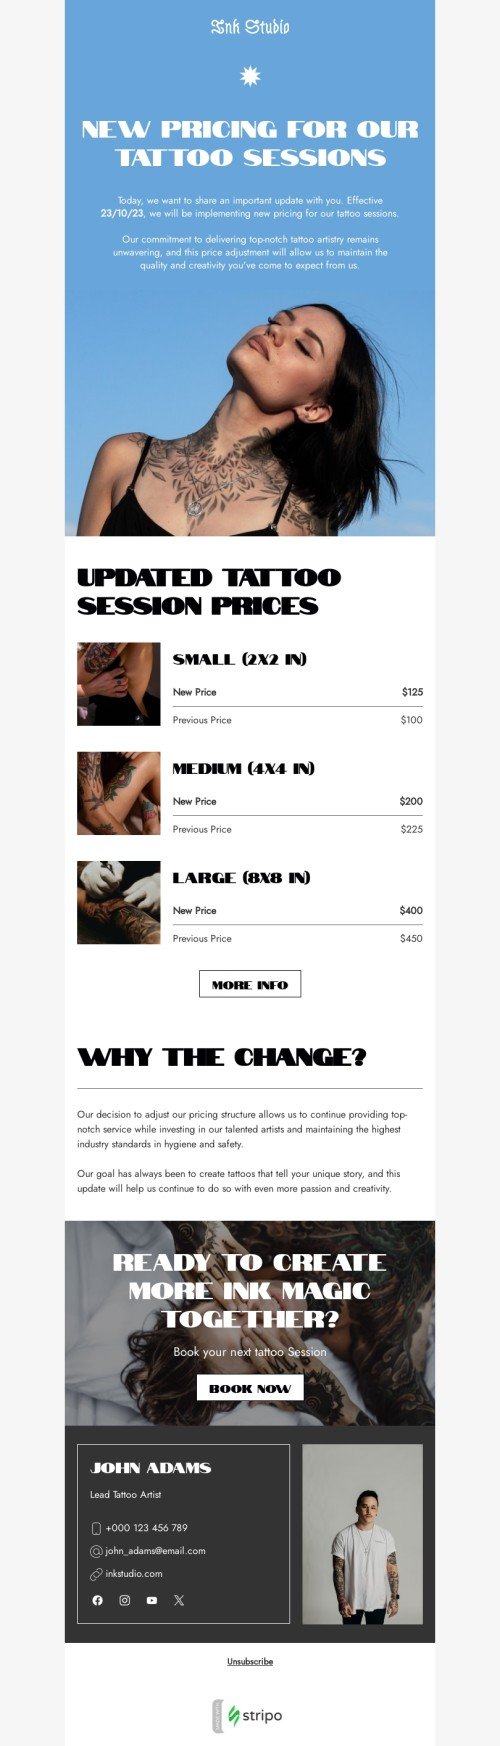 Plantilla de correo electrónico «Nuevos precios para nuestras sesiones de tatuaje» de lista de precios para la industria de tatuajes Vista de móvil